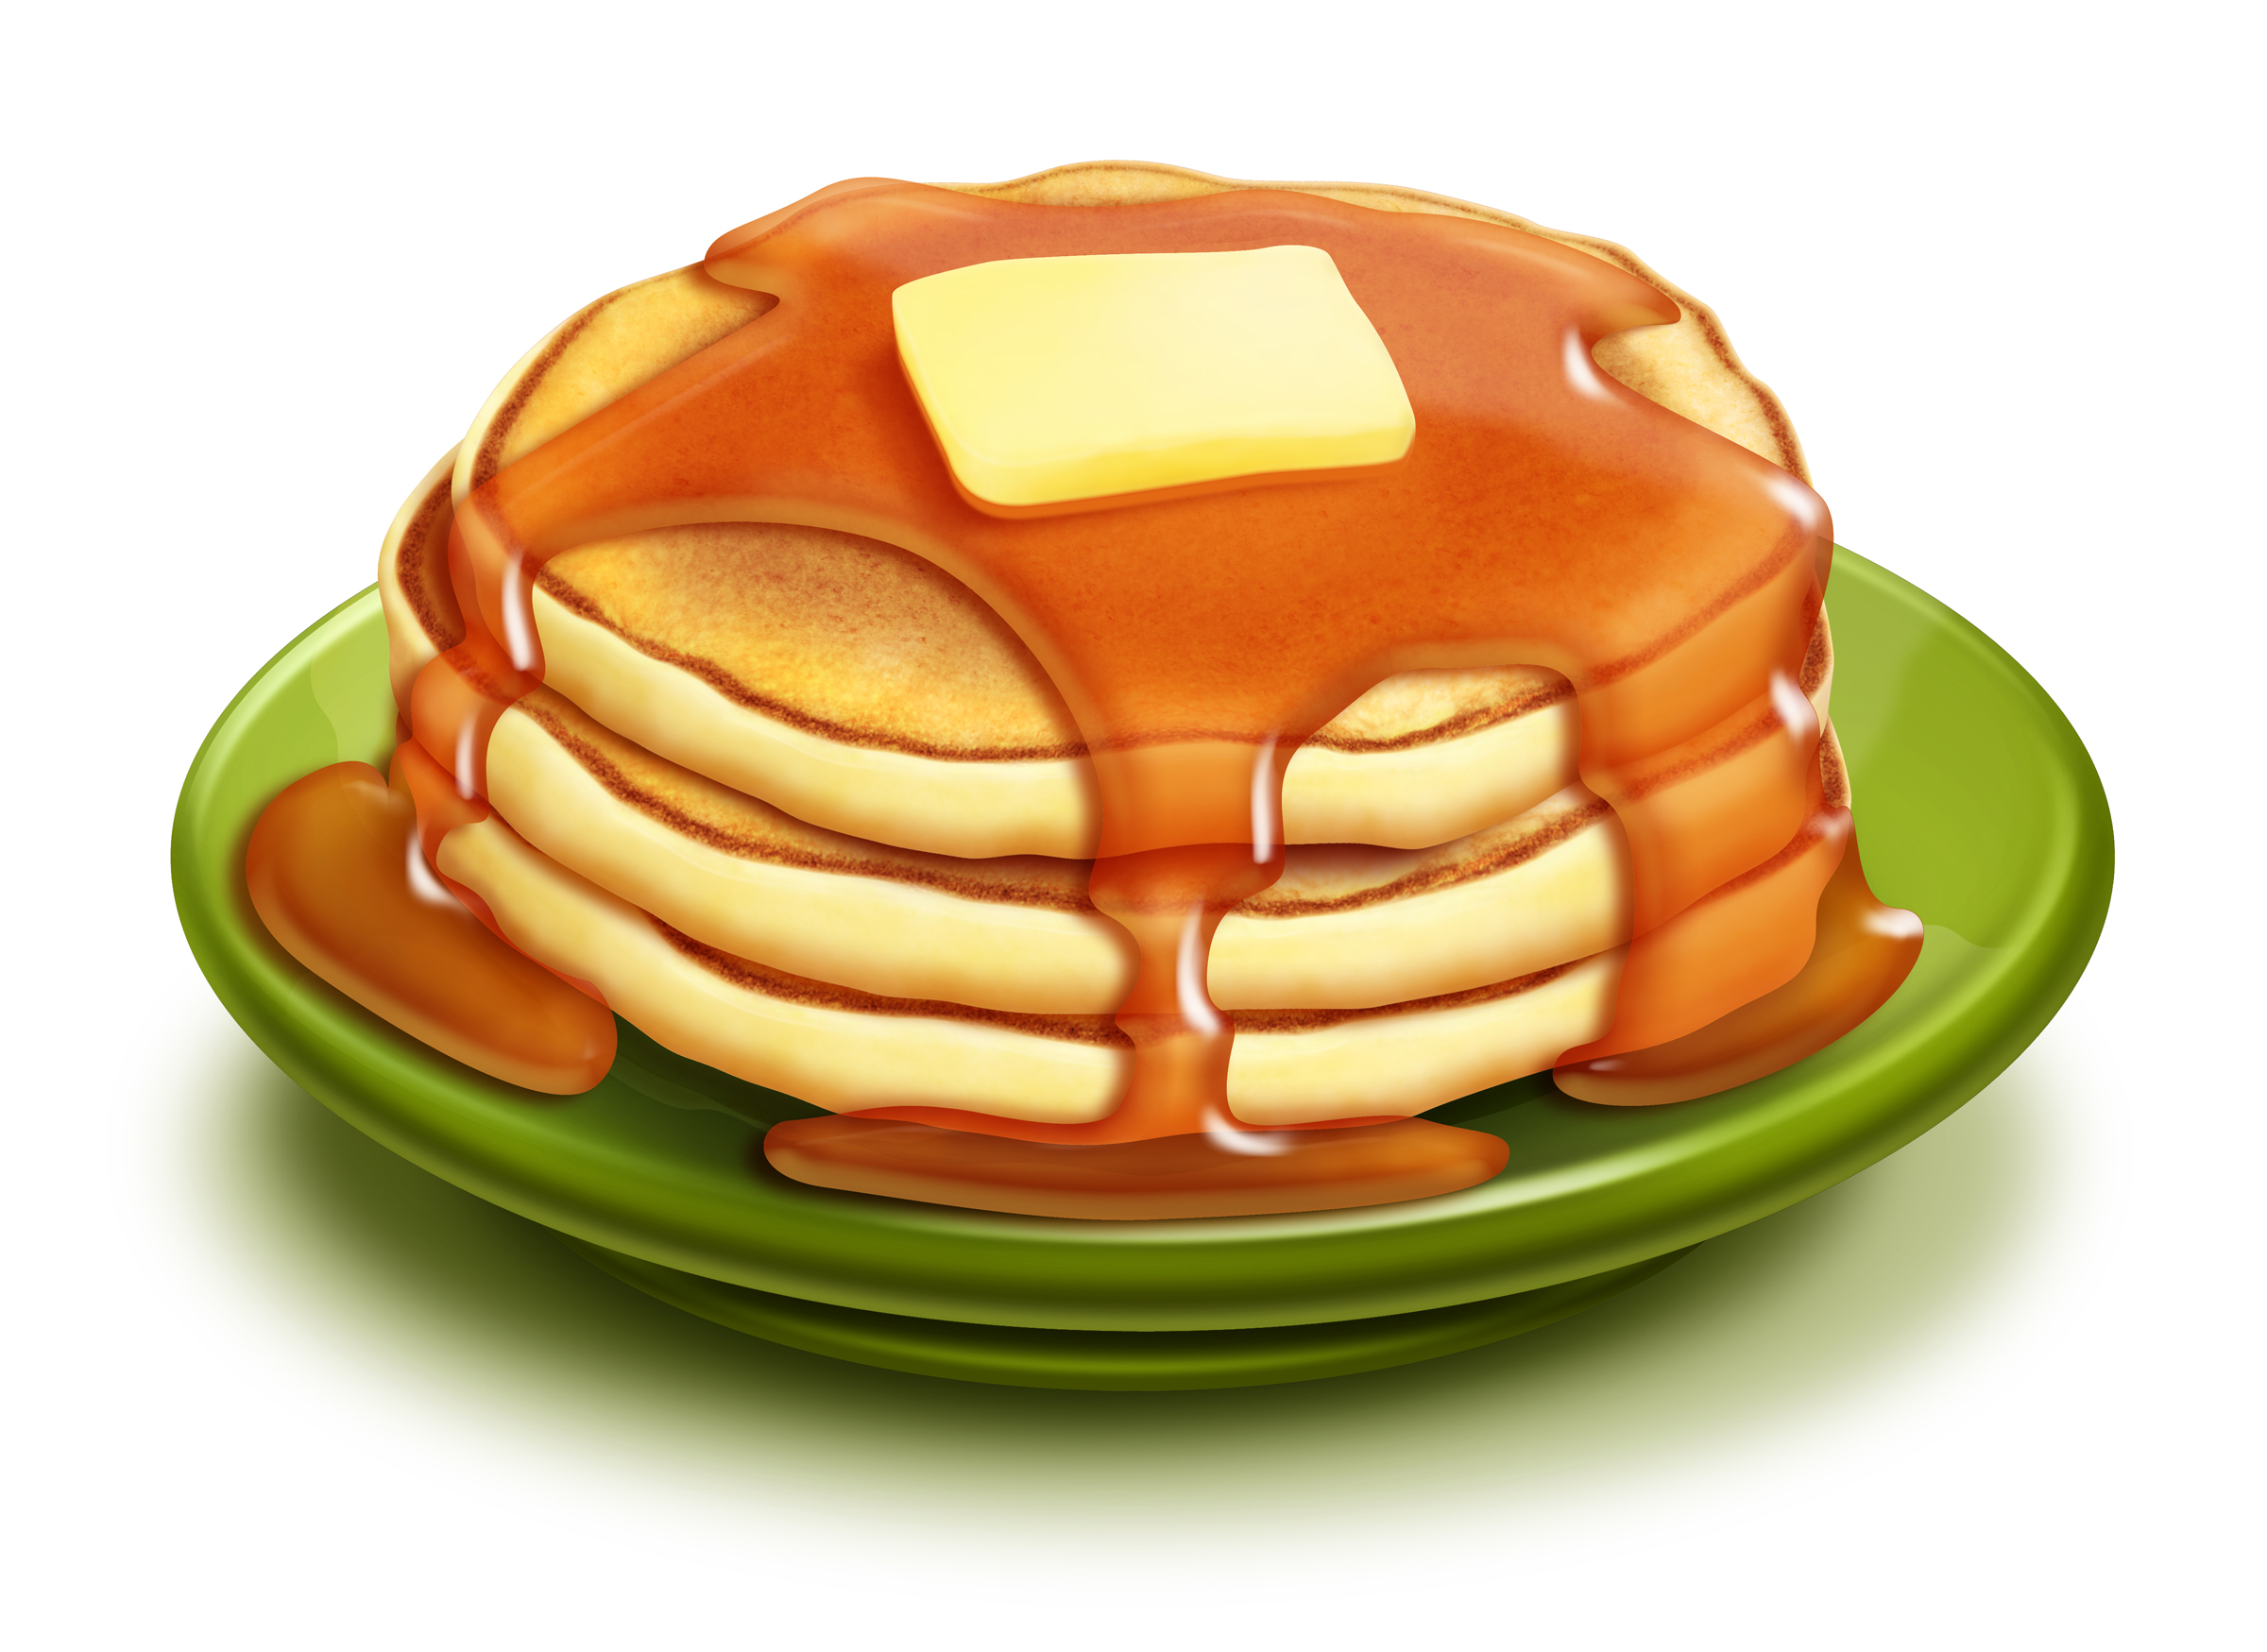 Yum, pancakes!